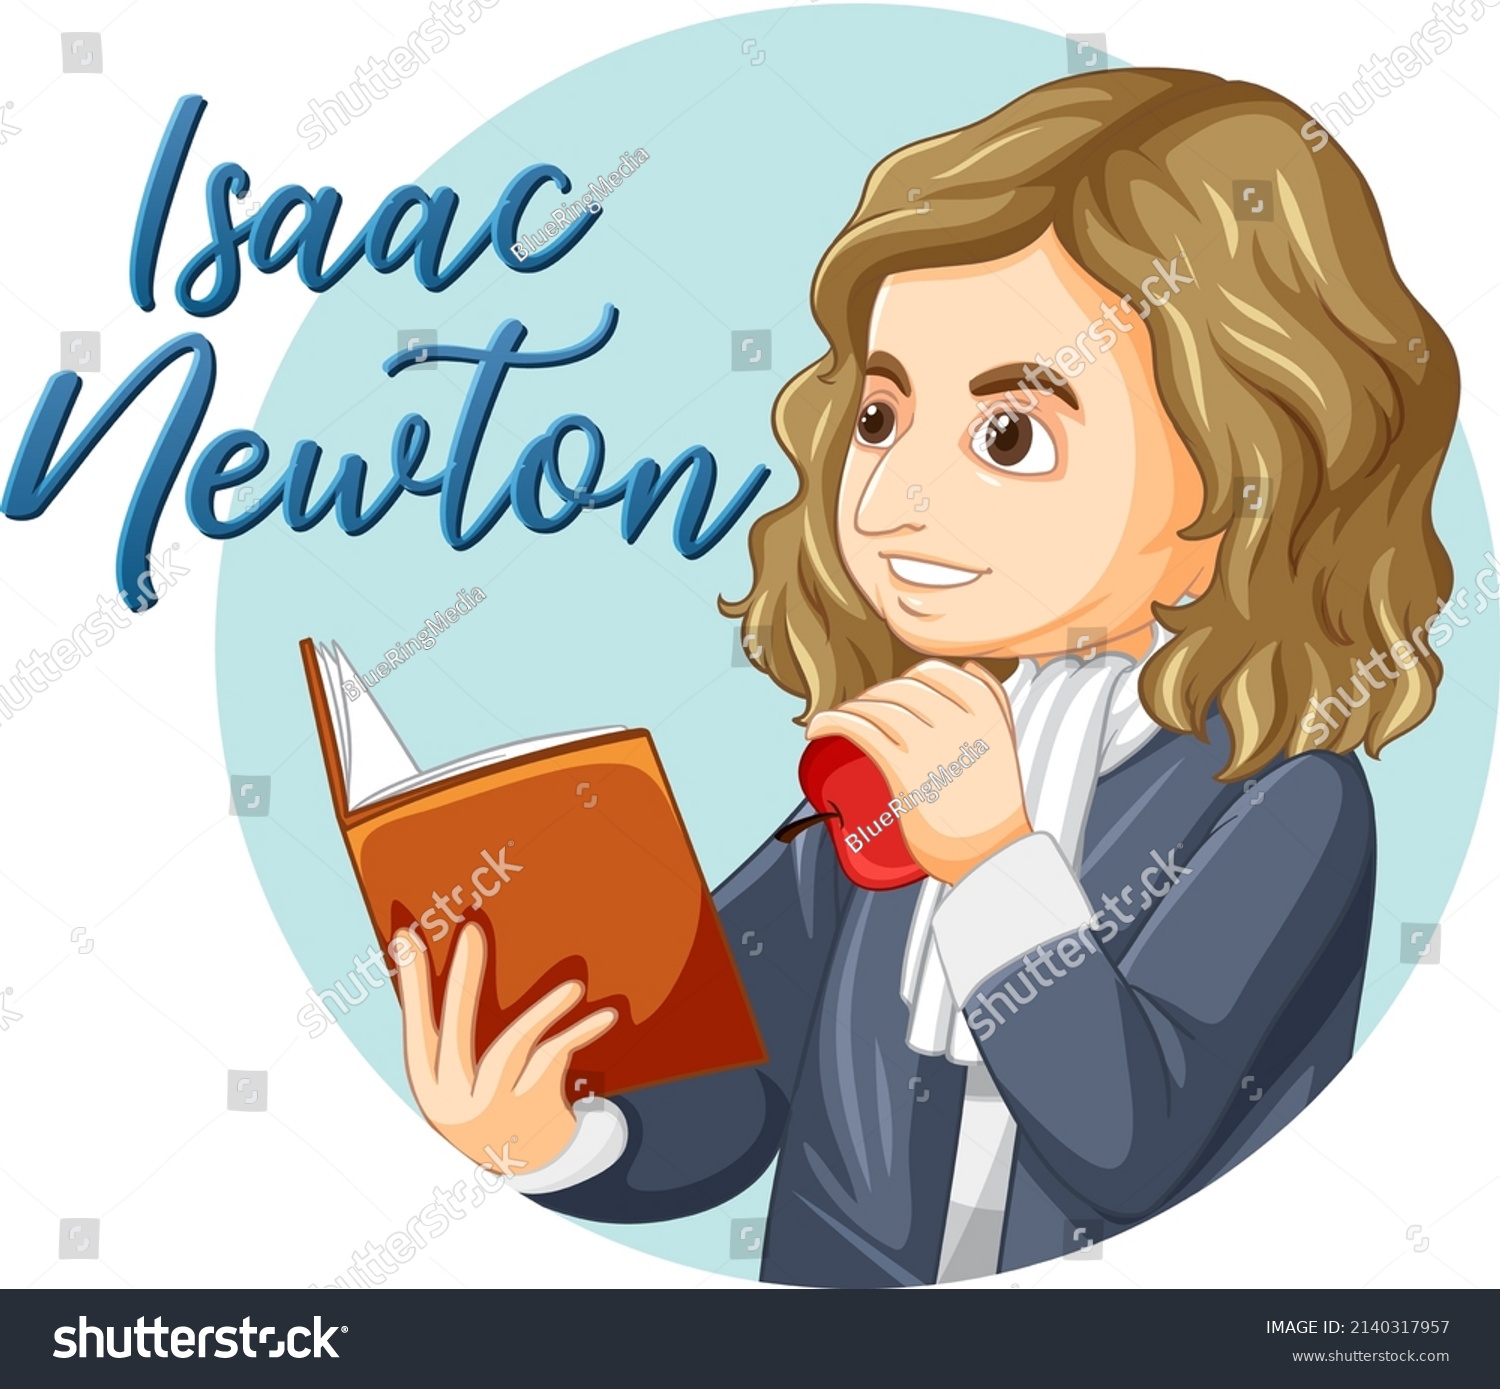 Portrait Isaac Newton Cartoon Style Illustration Stock Vector Royalty Free 2140317957 5612